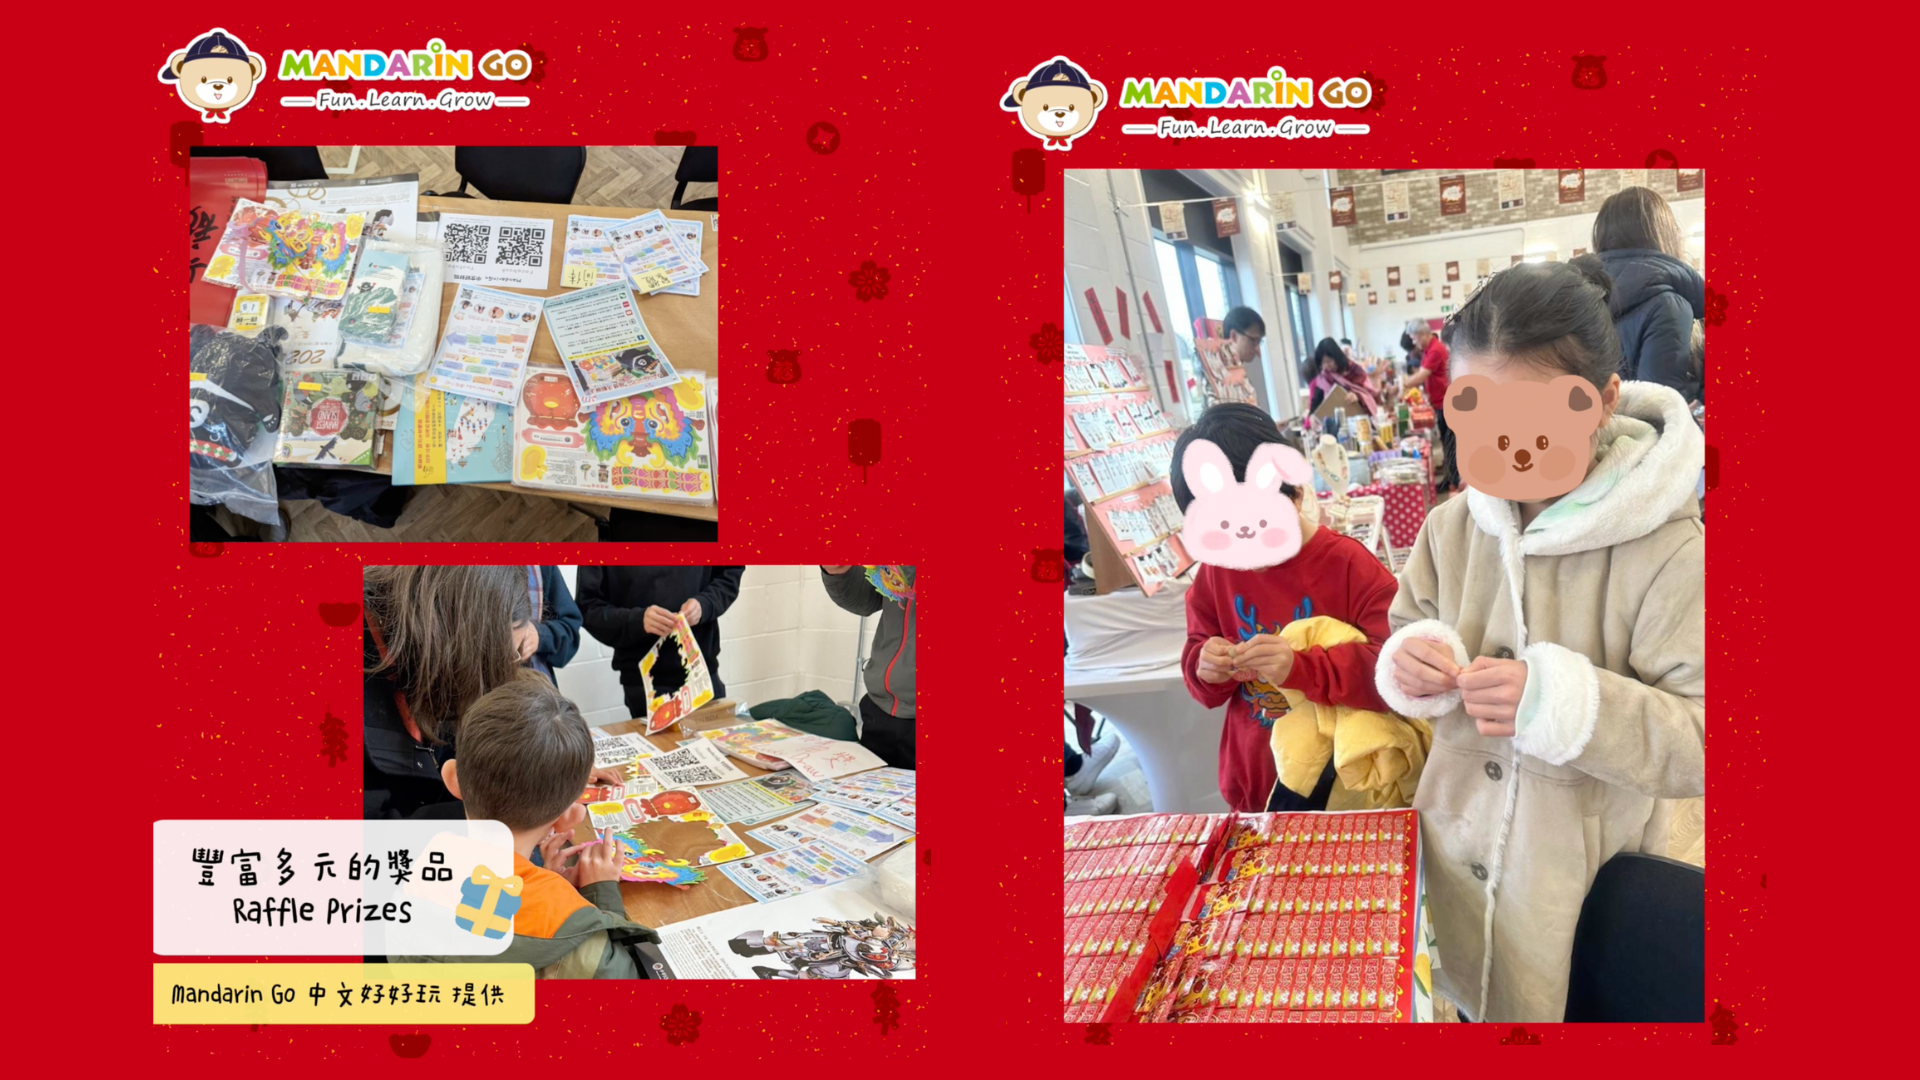 Mandarin Go 農曆新年文化活動 - 《豐富抽獎獎品》